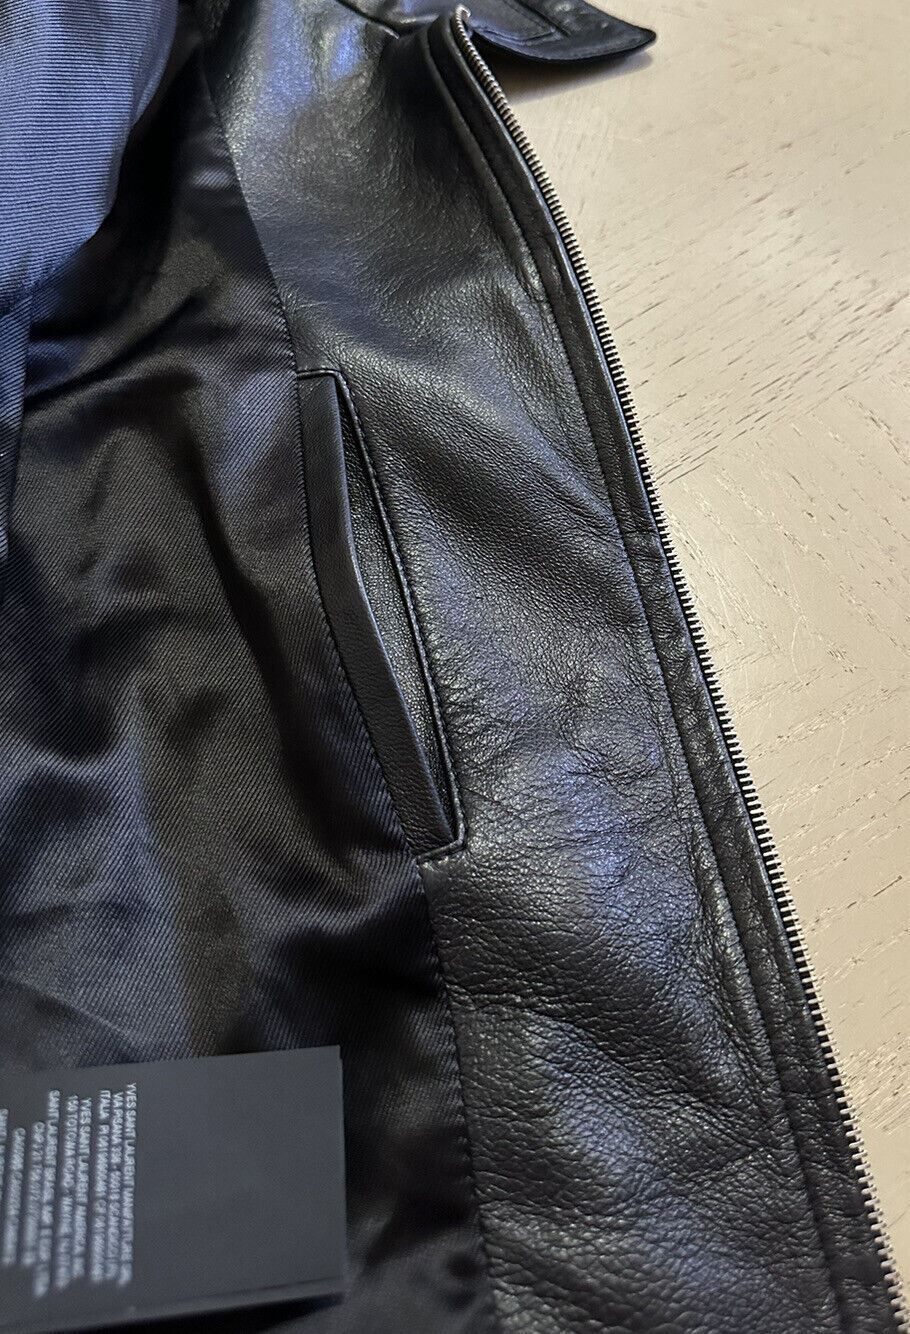 Новая мужская кожаная/замшевая куртка Saint Laurent за 5490 долларов США, черная 42 US/52 EU Италия